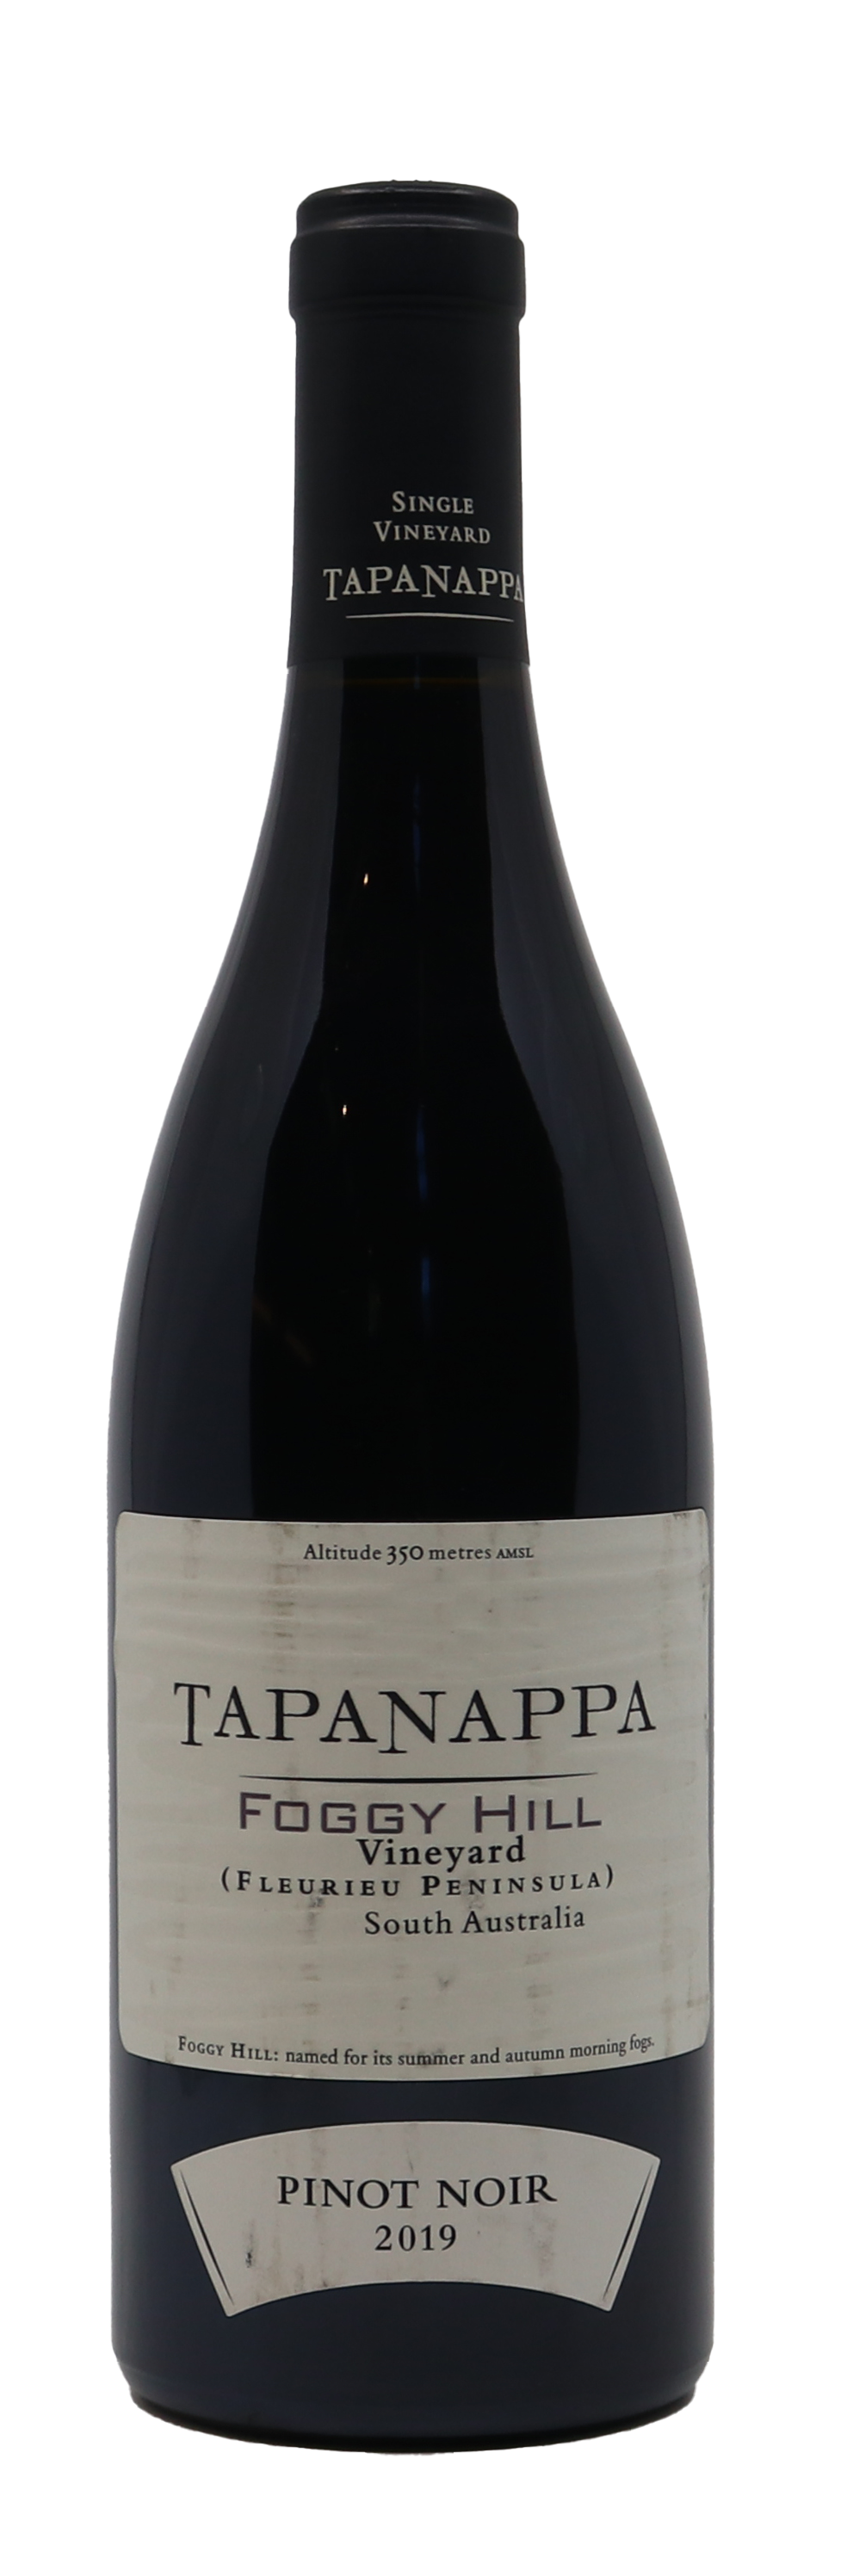 Tapanappa Foggy Hill Pinot Noir 2019